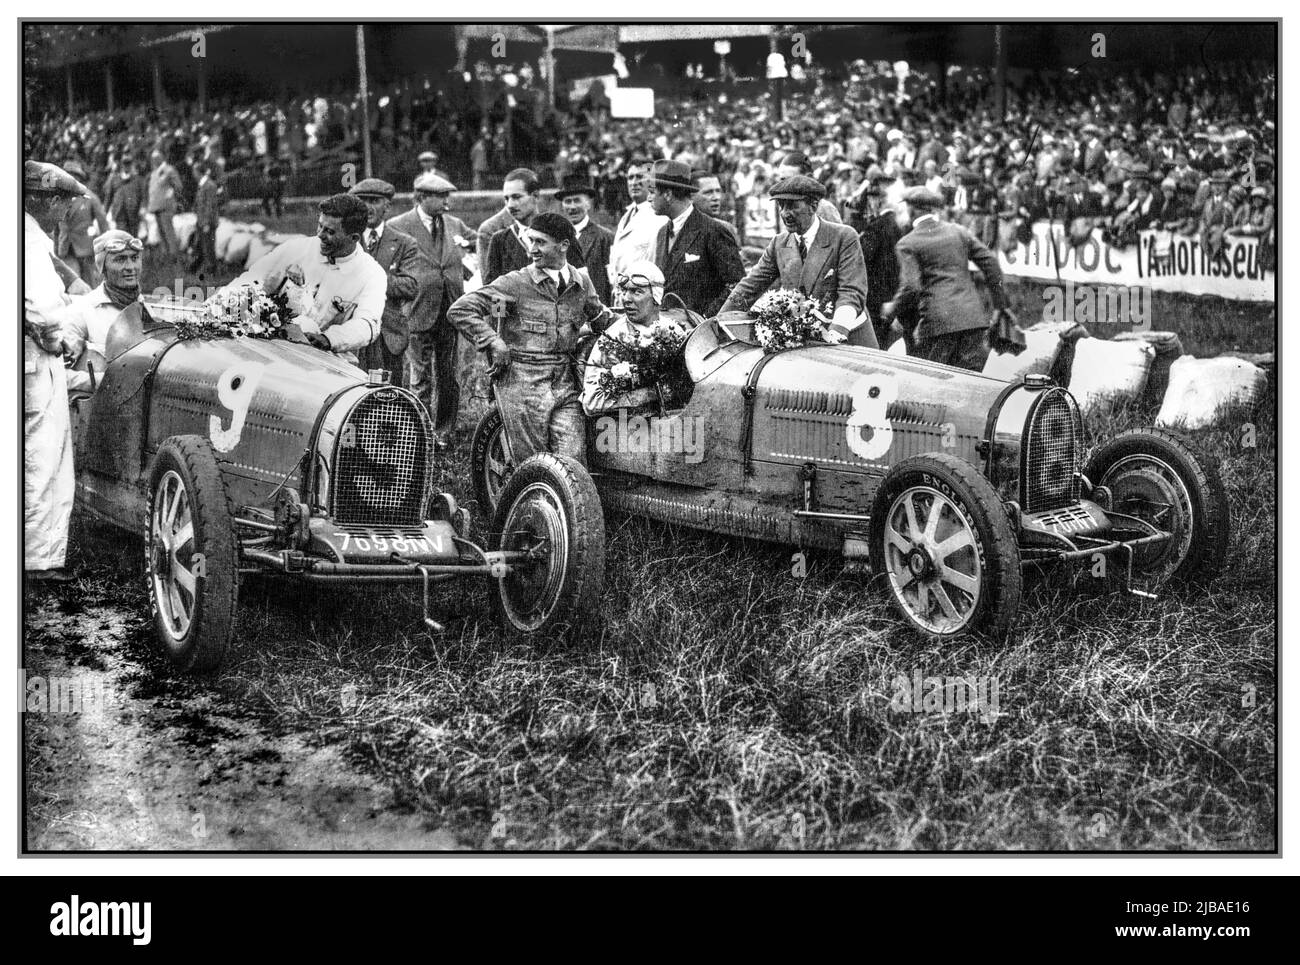 Jahrgang 1930 Belgischer Grand Prix-Sieger (links) Louis Chiron erster auf Platz 9 Butti und Guy Bouriat zweiter auf Platz 8., das Rennen, auch bekannt als VII Grand Prix d'Europe, war ein Grand Prix-Motorrennen, das am 20. Juli 1930 in Spa-Francorchamps stattfand. Das Rennen wurde über 40 Runden auf einem 14,914 km langen Rundkurs auf einer Gesamtstrecke von 596,560 km ausgetragen und von Louis Chiron mit einem Bus gewonnen. Stockfoto